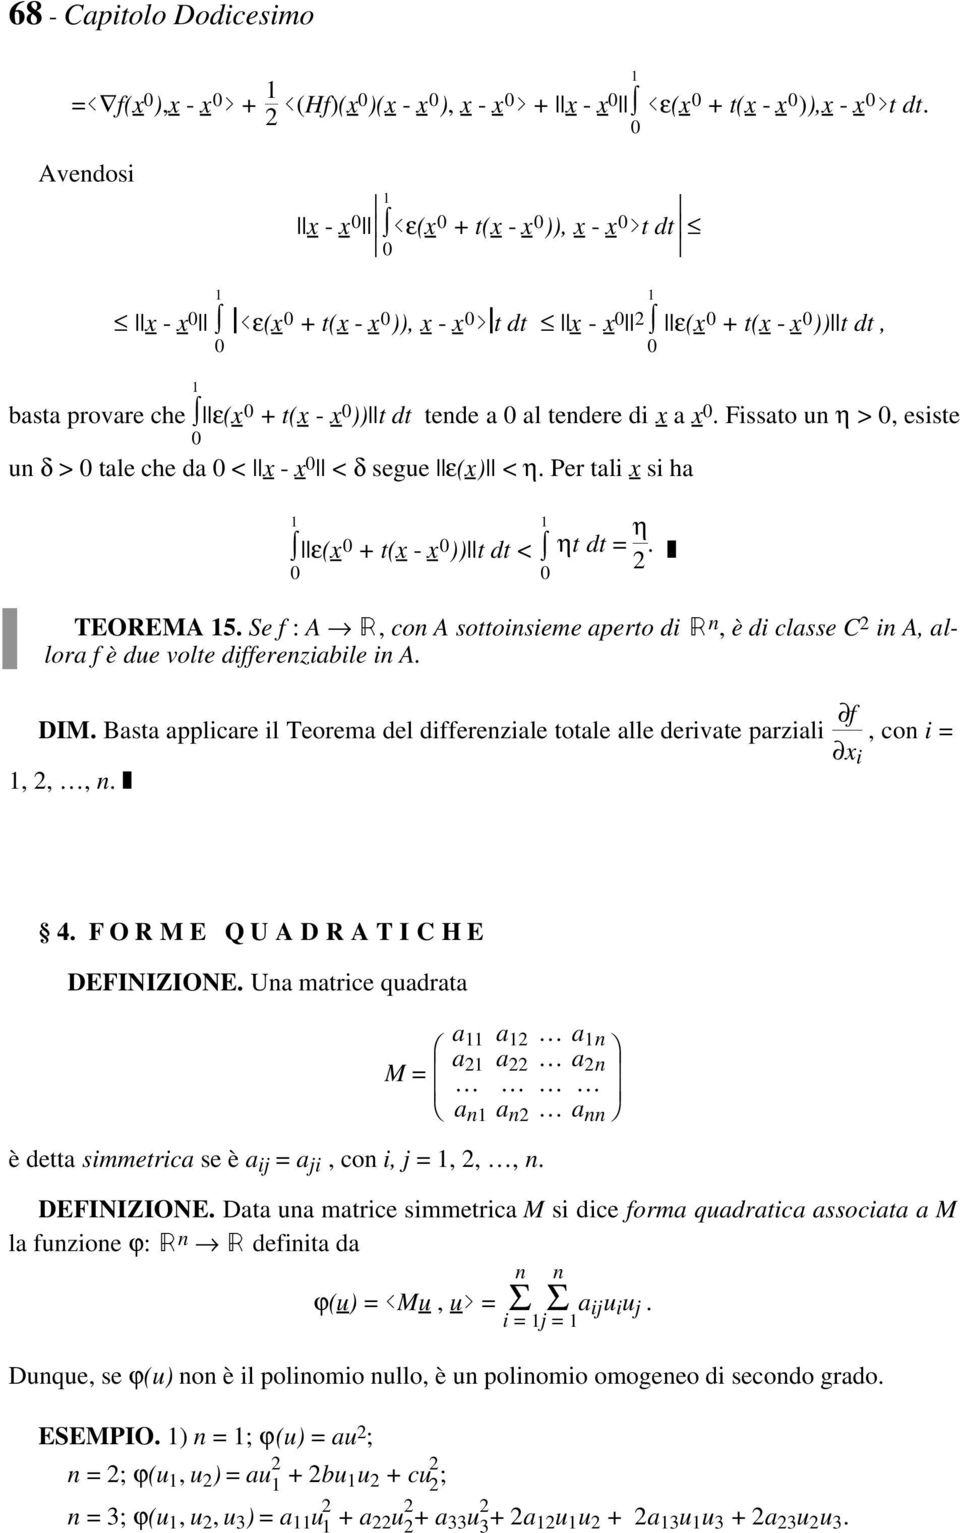 pε(x + t(x - x ))pt dt < ηt dt = η 2 TEOREMA 5 Se f : A Â, con A sottoinsieme aperto di Â n, è di classe C 2 in A, allora f è due volte differenziabile in A DIM Basta applicare il Teorema del